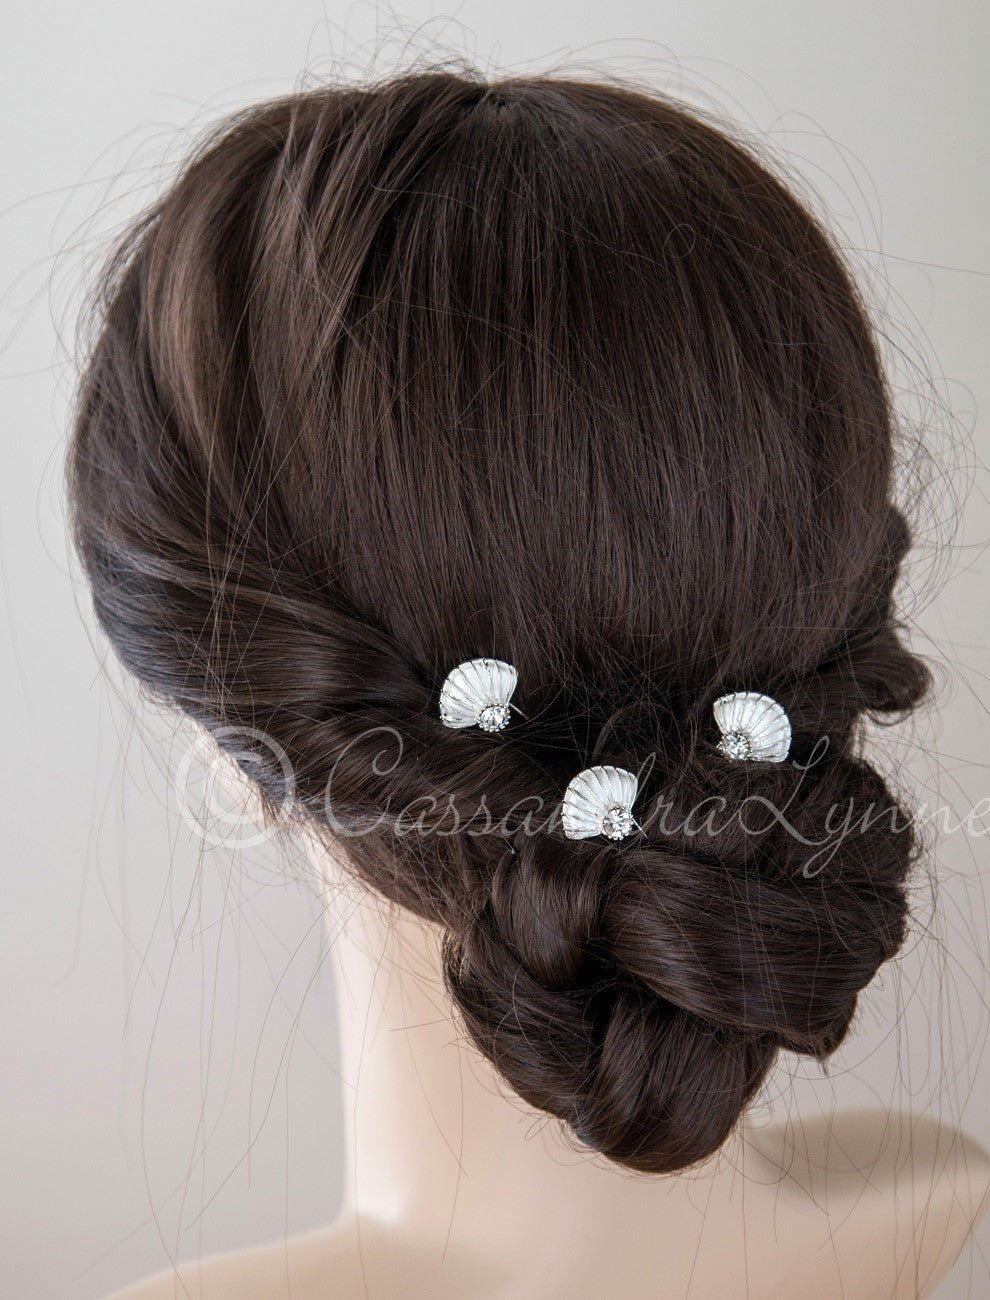 Bridal Hair Pin of Crystal Shell - Cassandra Lynne